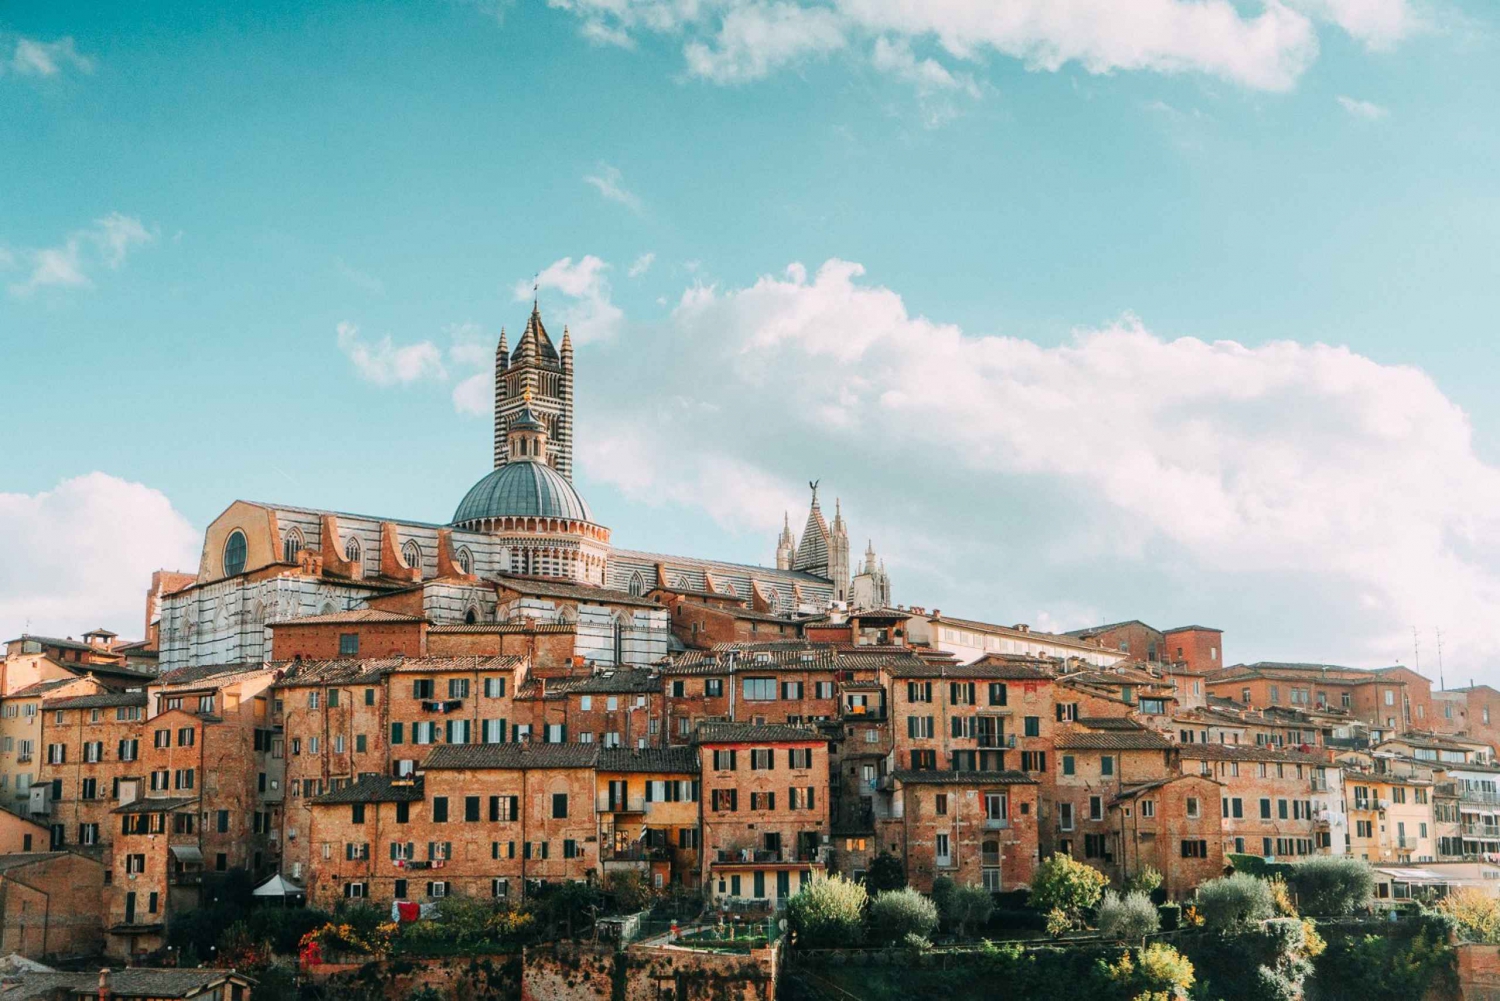 Excursión de medio día a Siena desde Florencia